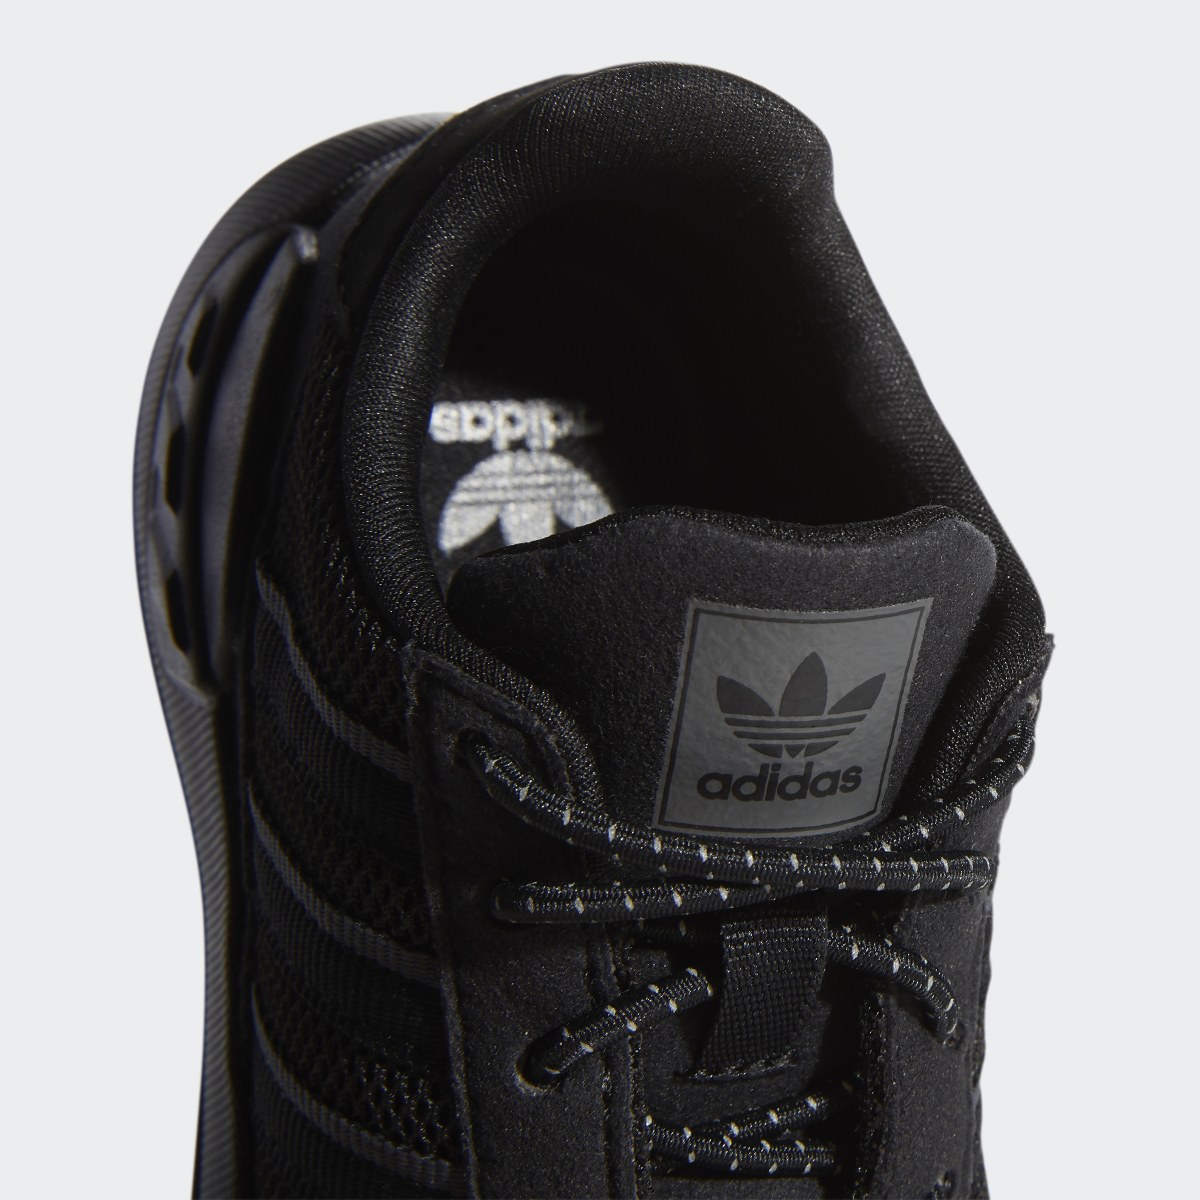 Adidas LA Trainer Lite Shoes. 10